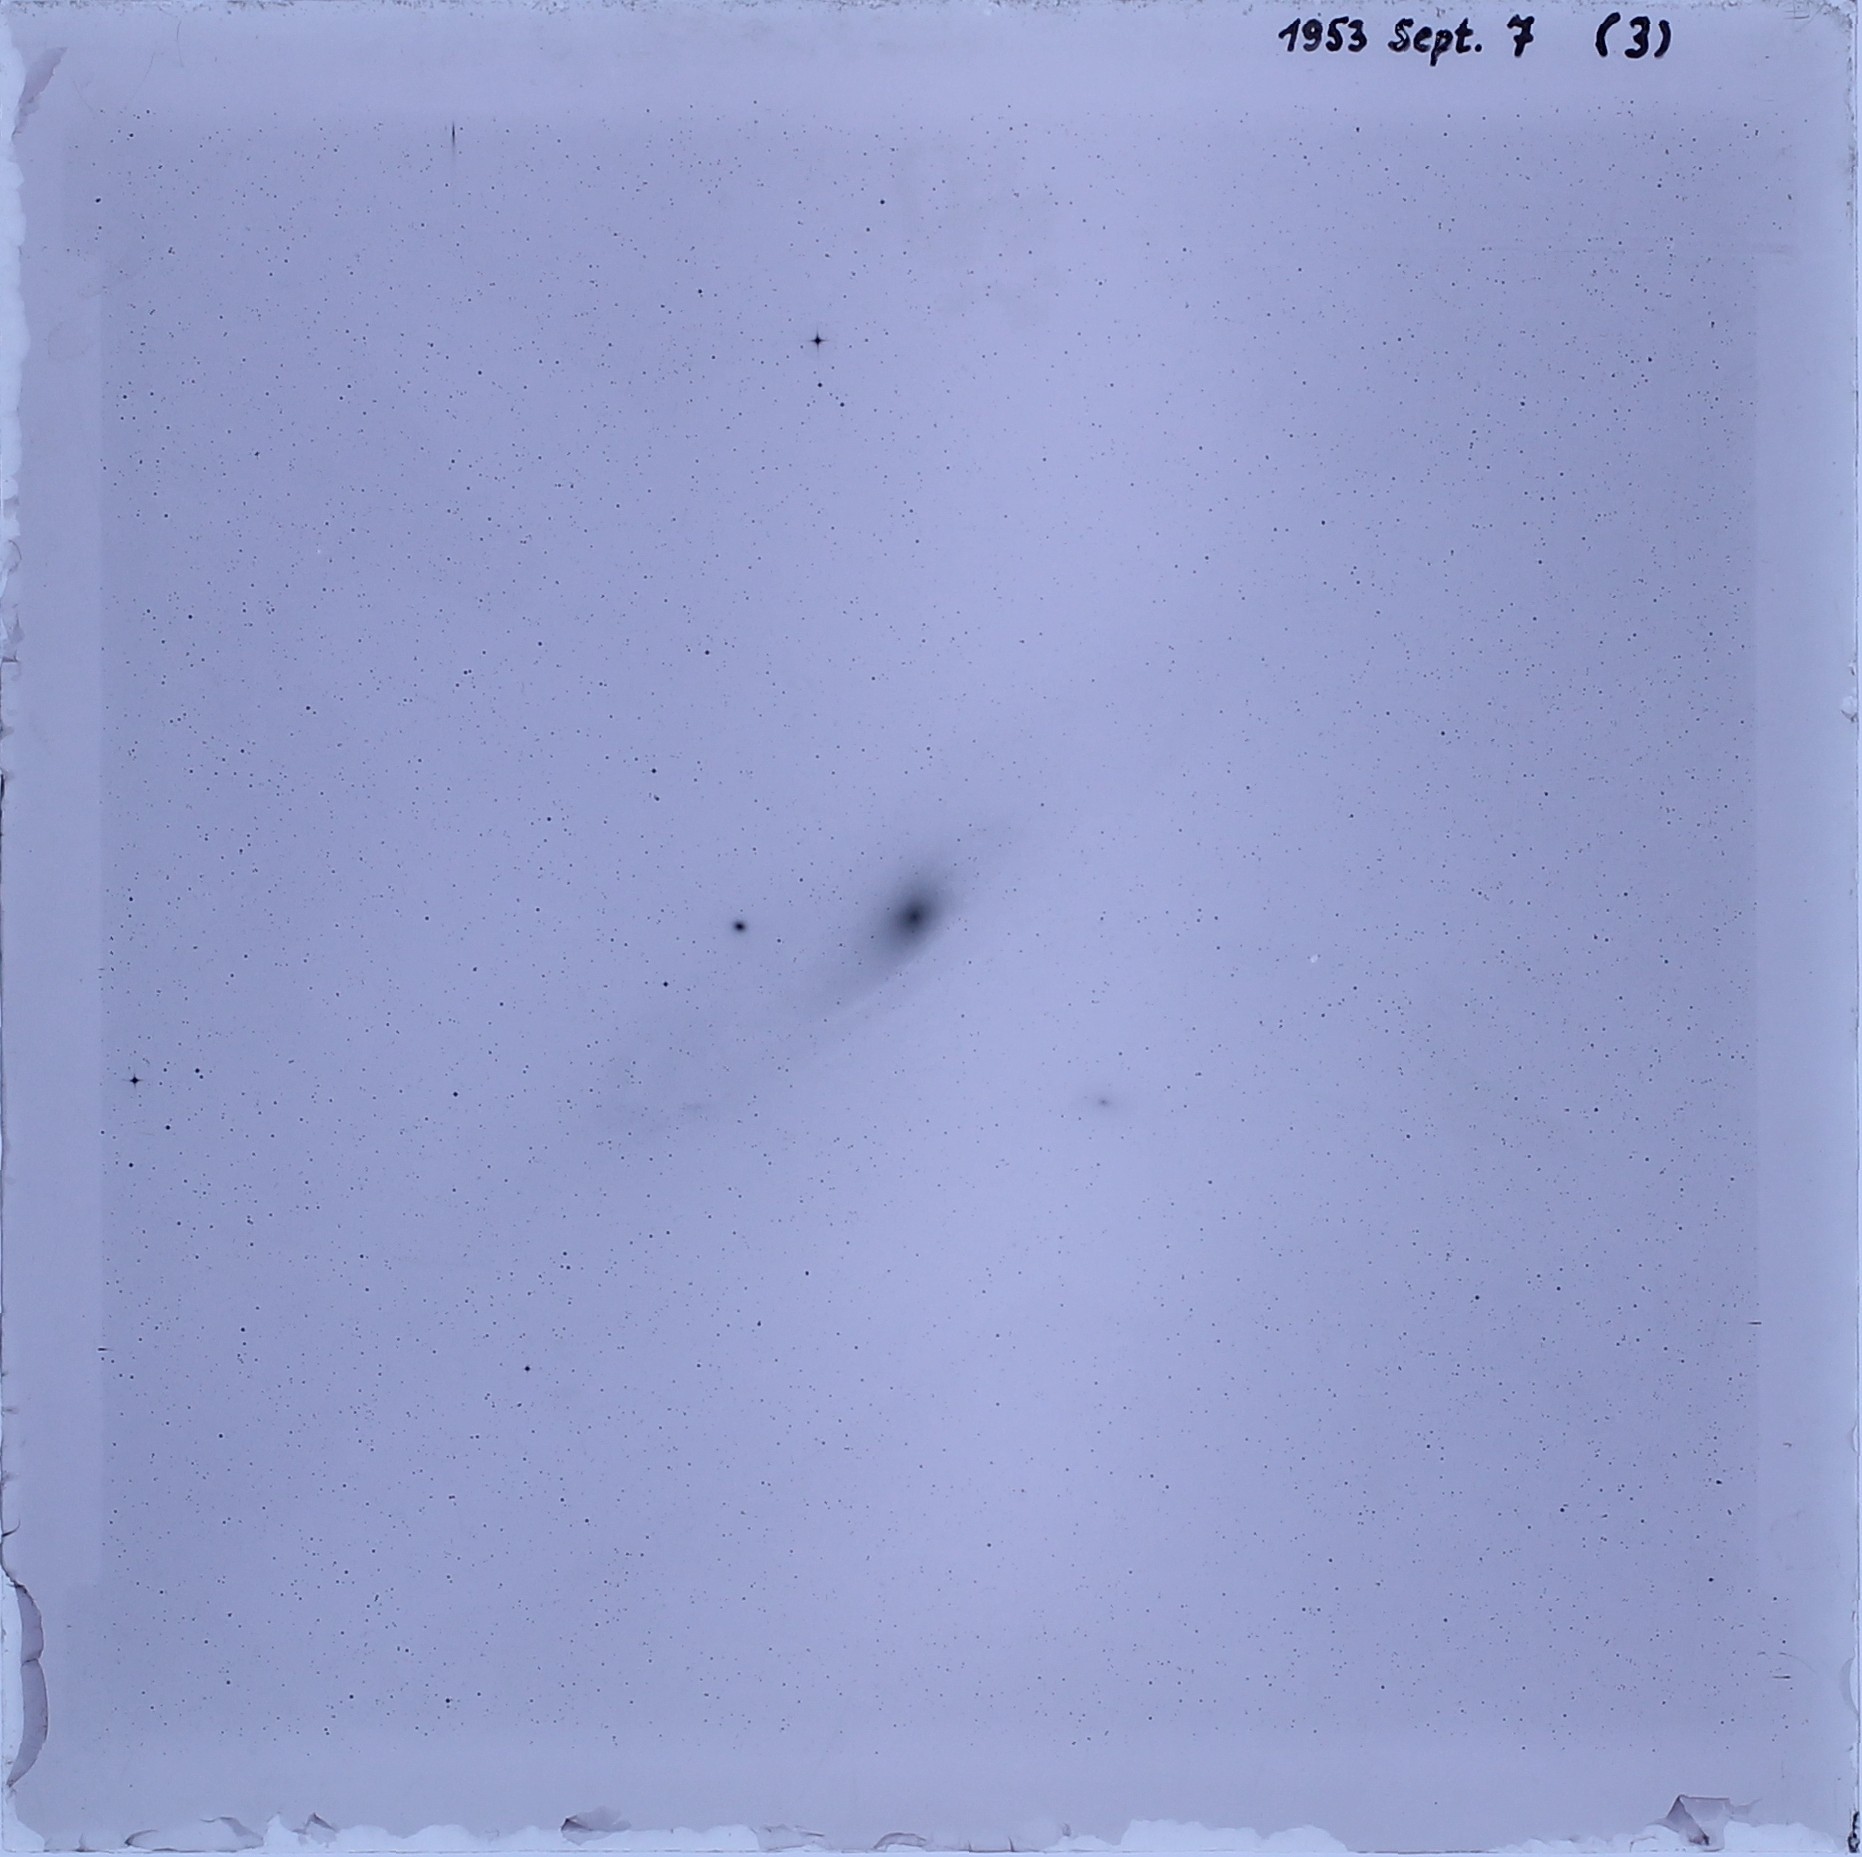 Imagen directa con exposición de una sola hora de la Galaxia de Andrómeda (M31) tomada el 7 de septiembre de 1953 con la cámara Great Schmidt de 50 cm.  (Foto: Reproducción / APLAUSOS)